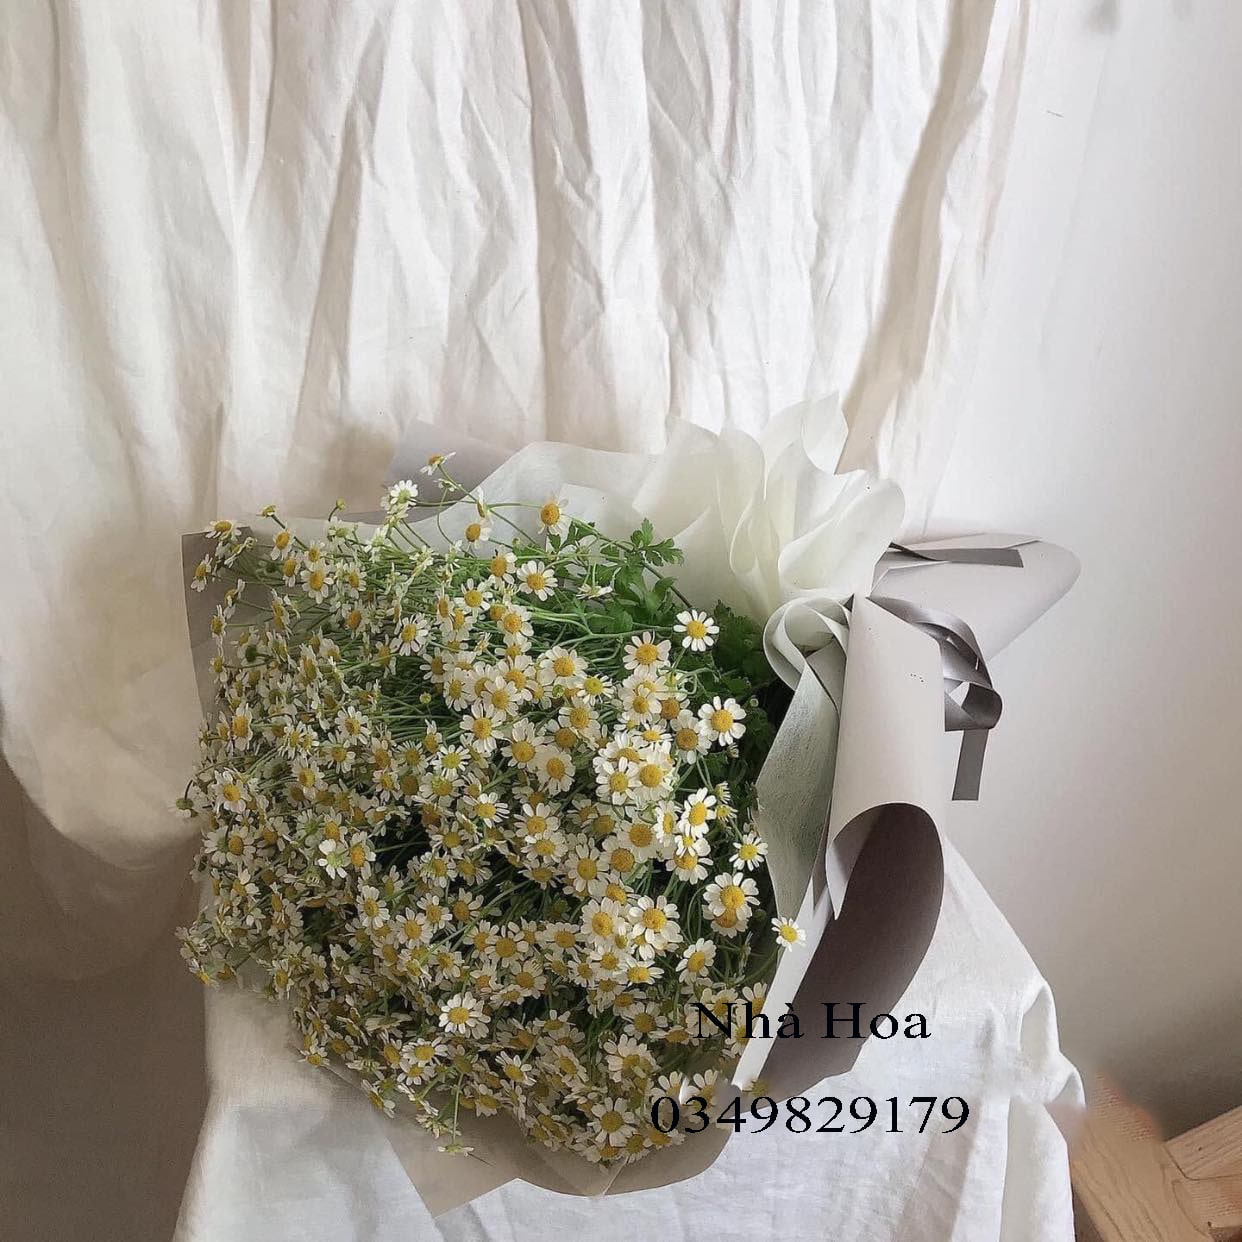 Shop hoa tươi quận 12 giá rẻ đẹp và chất lượng tại Hồ Chí Minh